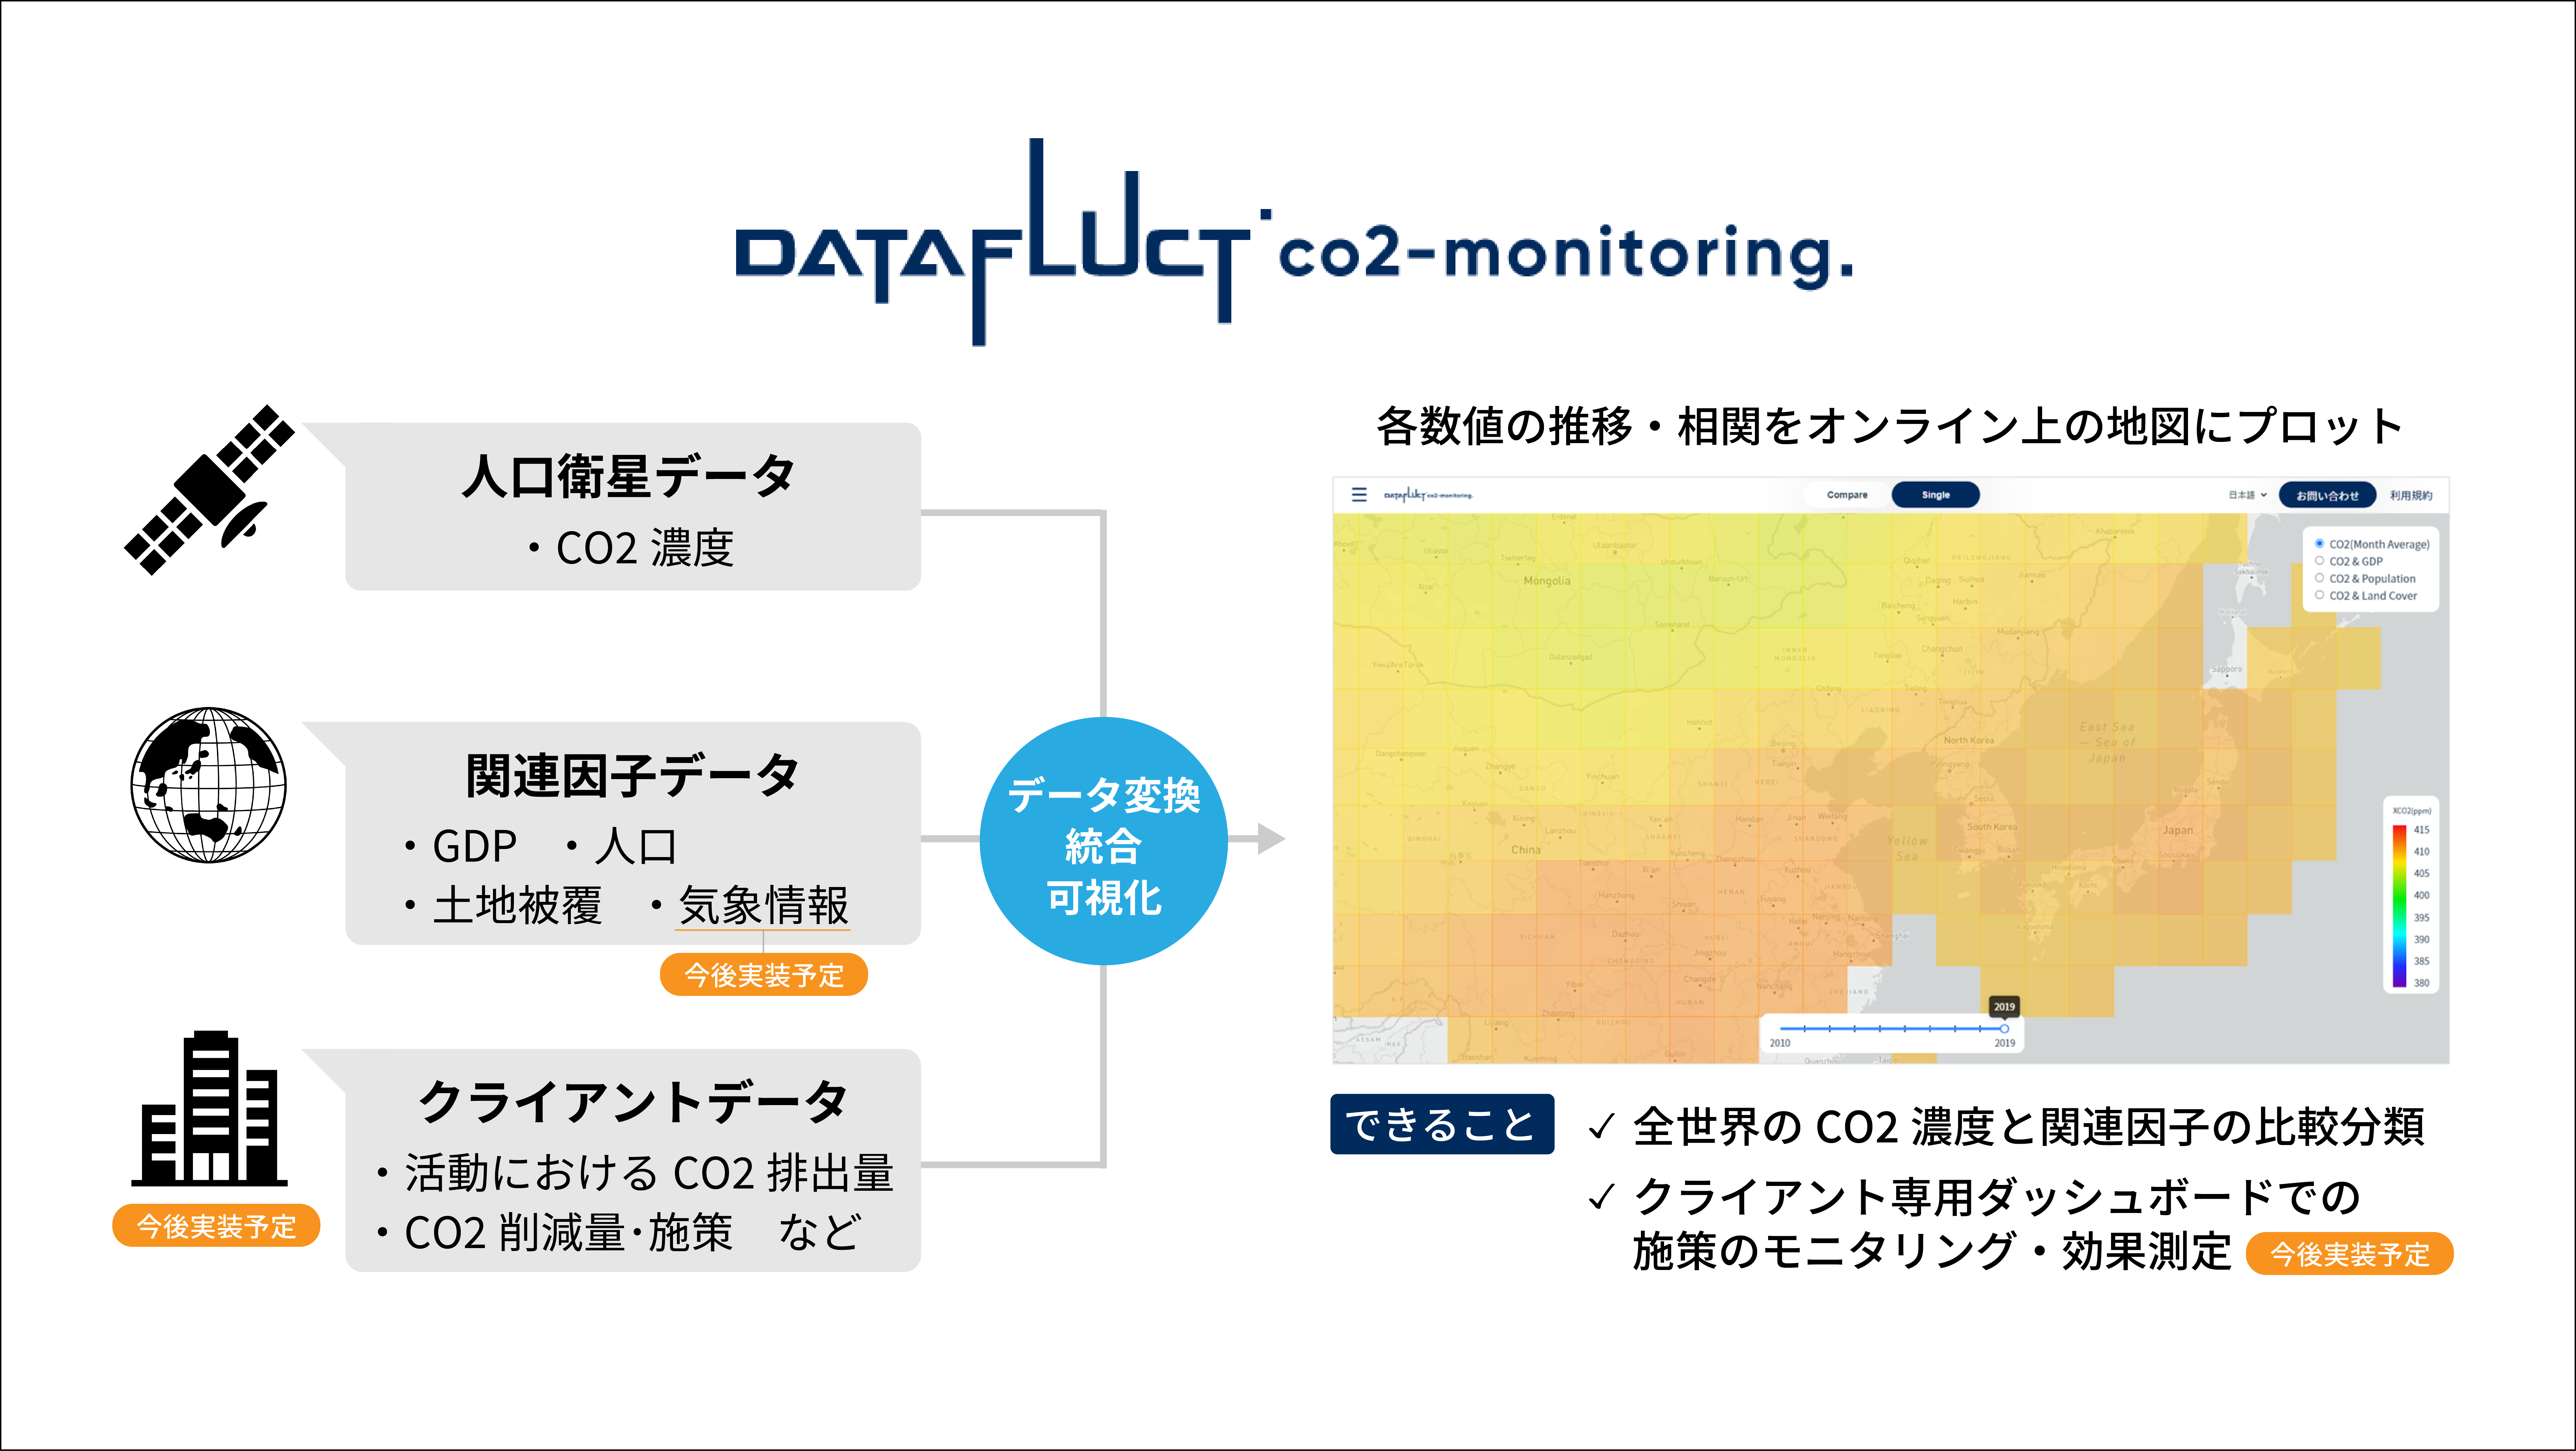 衛星データを活用し 大気中の二酸化炭素の濃度と経済活動を可視化する環境モニタリングサービス Datafluct Co2 Monitoring を提供開始 株式会社datafluctのプレスリリース